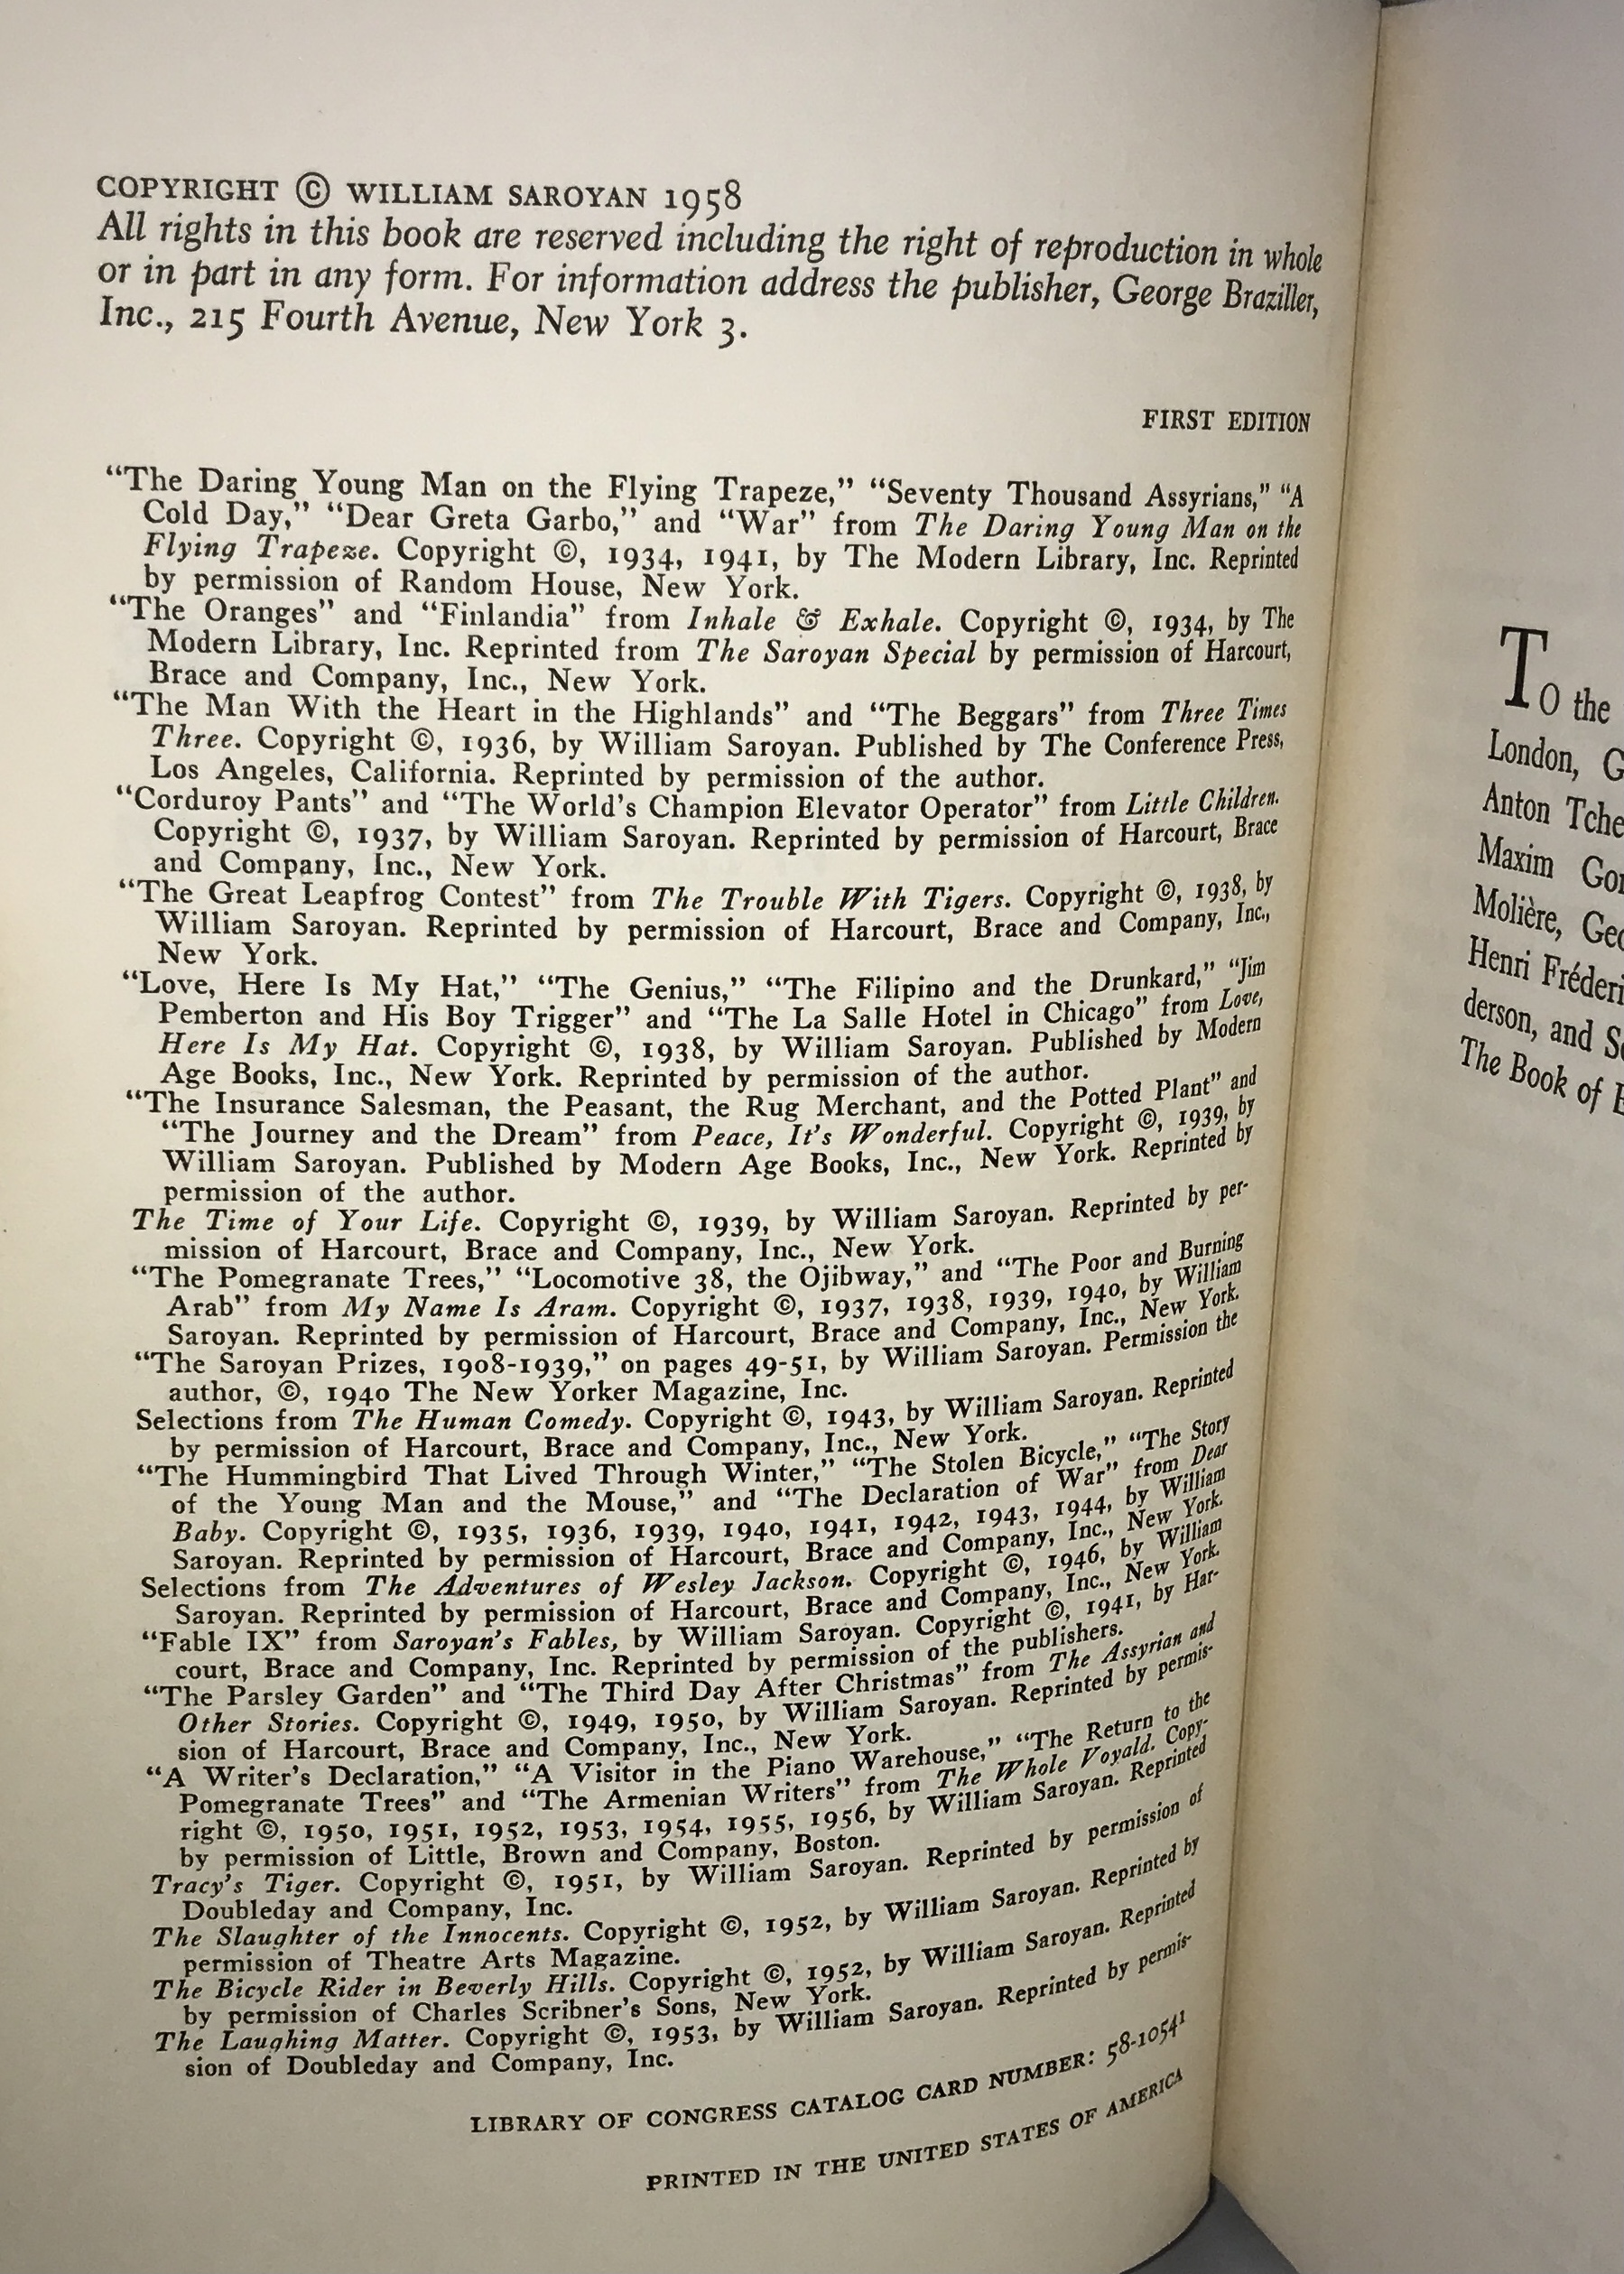 A William Saroyan Reader (First Edition) by William Saroyan (author ...